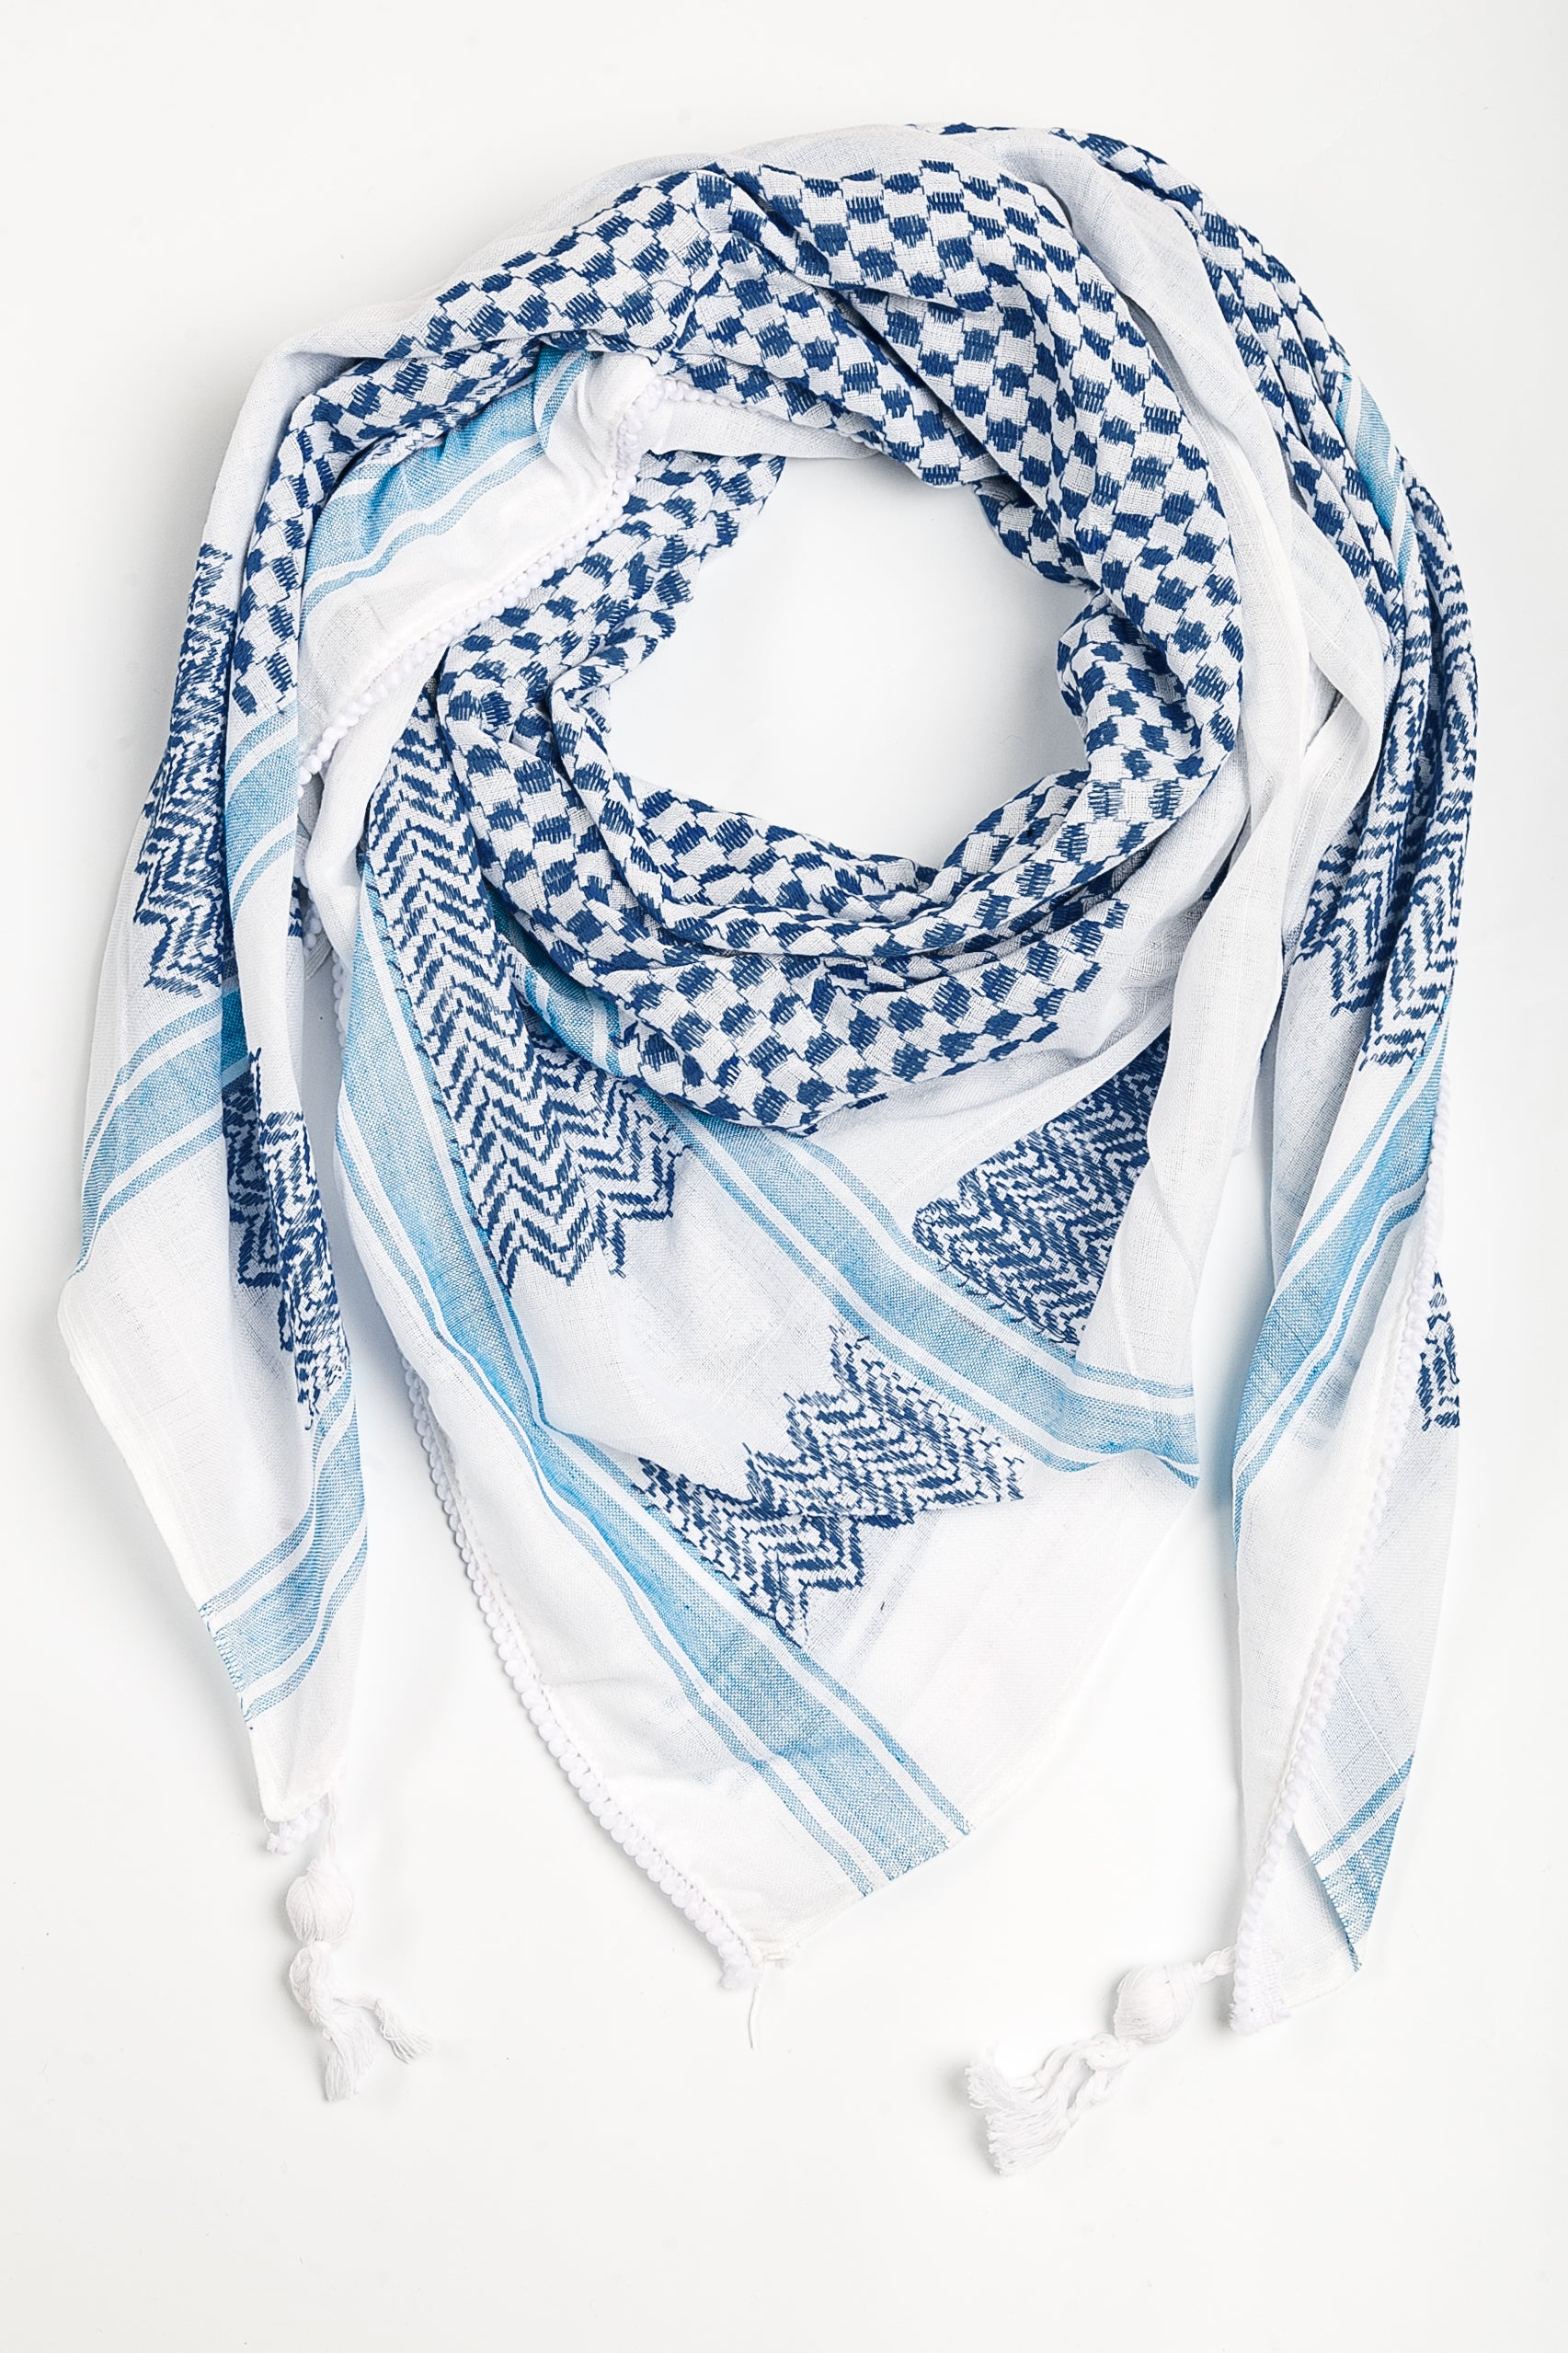 Palestinian kufiya white and blue